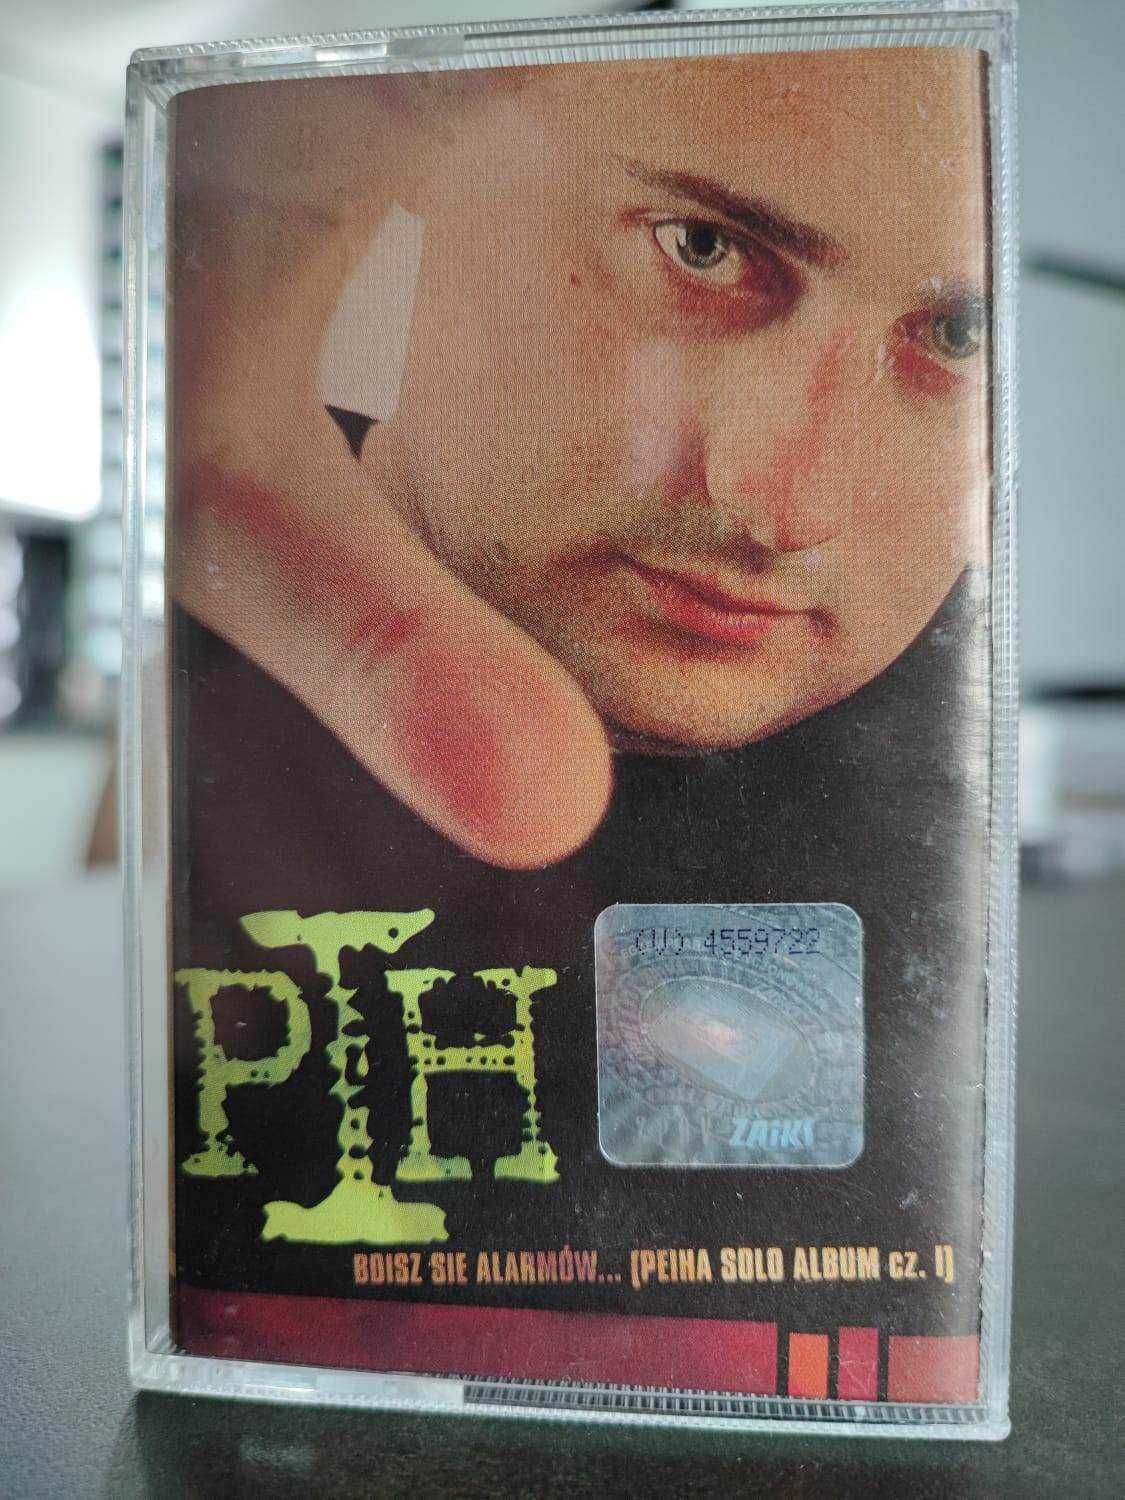 Pih - Boisz się alarmów.. 2002 / Krew pot i łzy 2004 - kasety